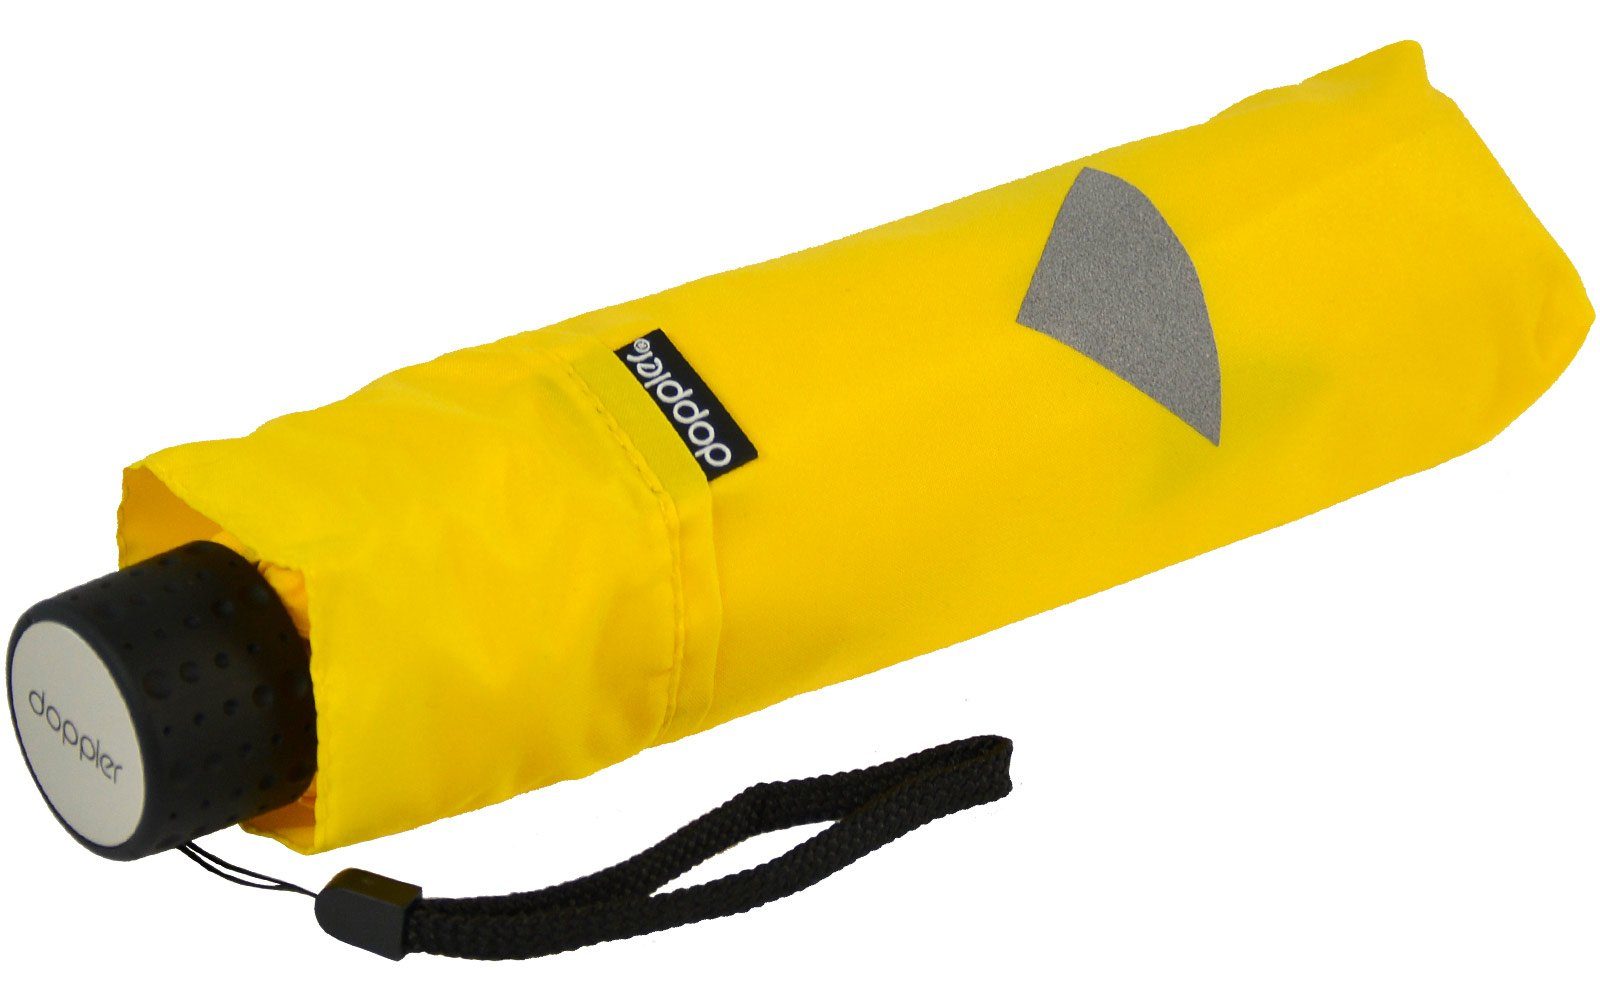 doppler® Taschenregenschirm Super-Mini Havanna Kids gelb kleiner, Kinderschirm leichter mit Aufdrucken Reflex, reflektierenden